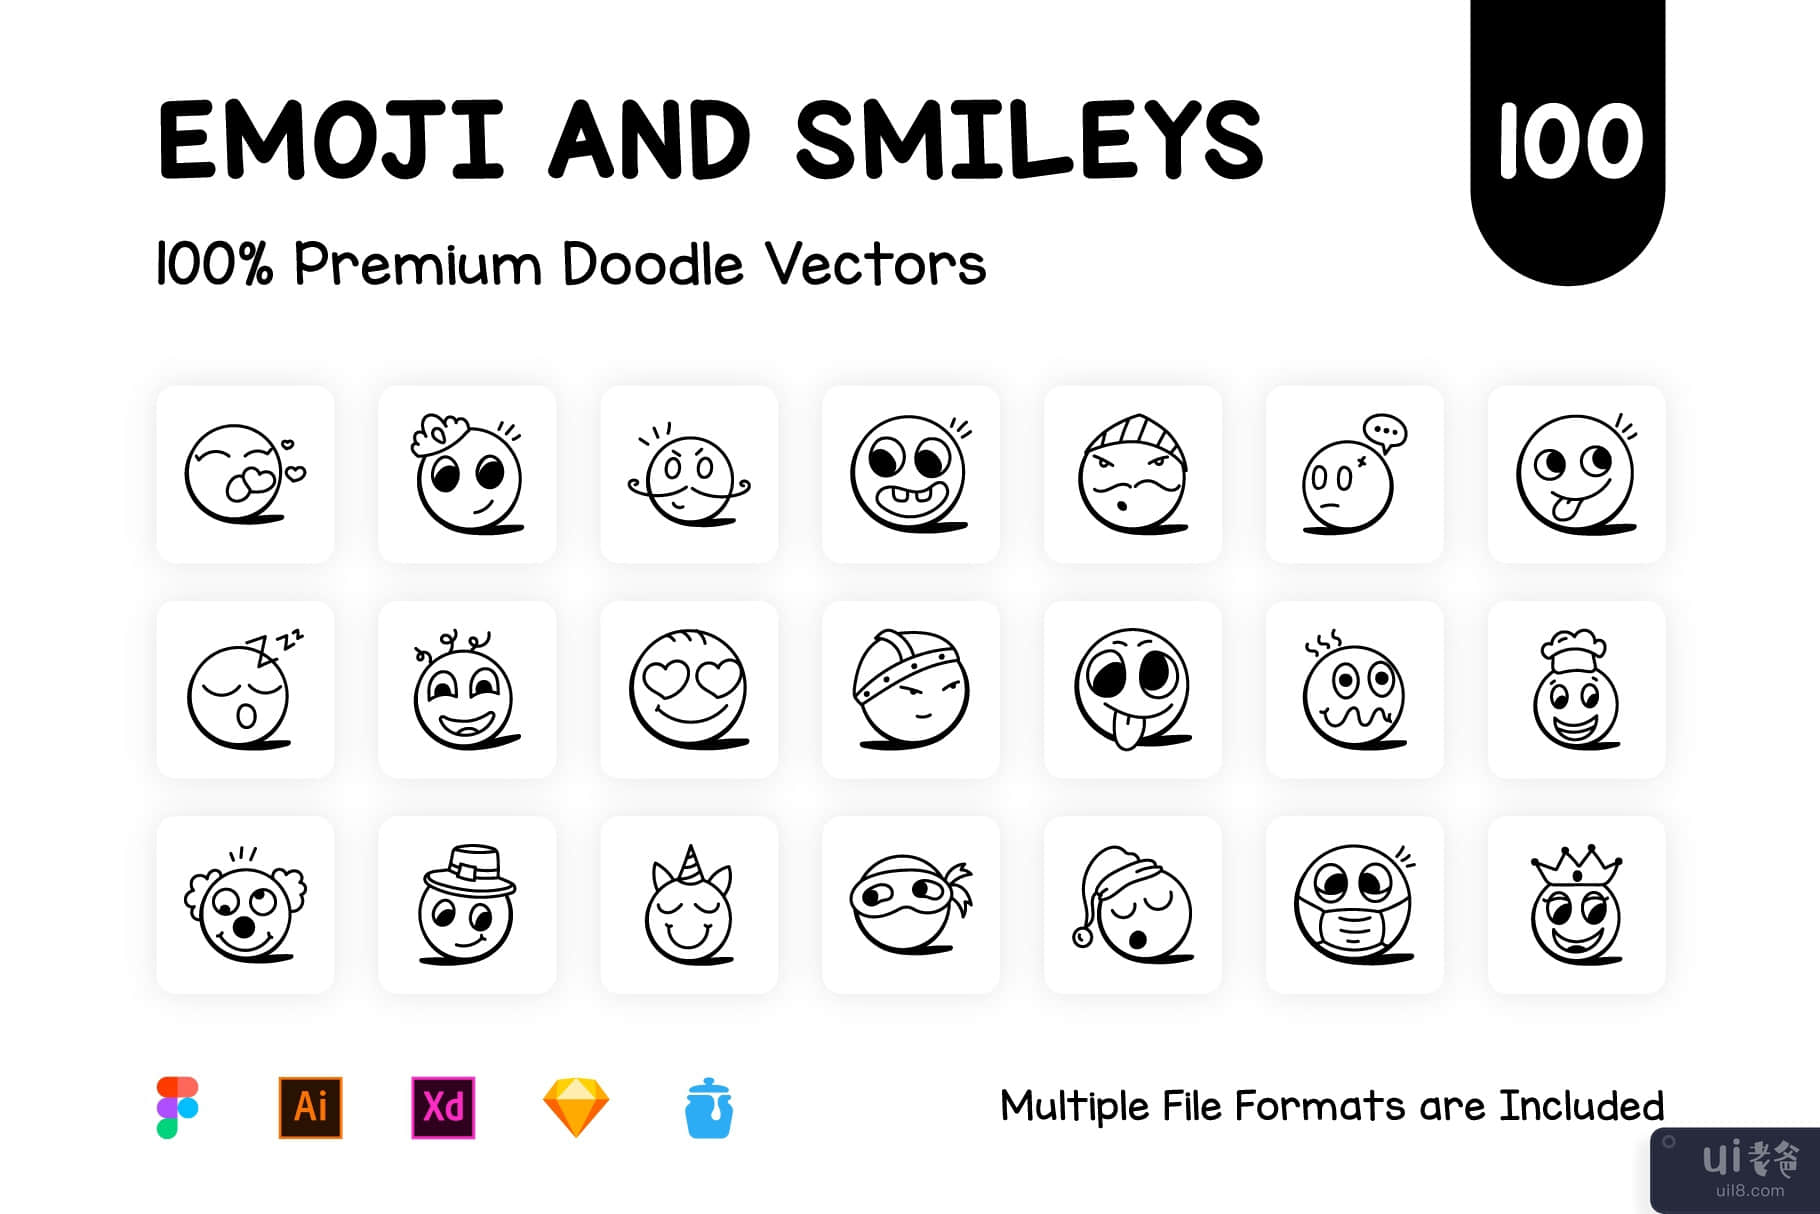 笑脸和表情符号图标的集合(Collection of Smileys and Emoji Icons)插图5